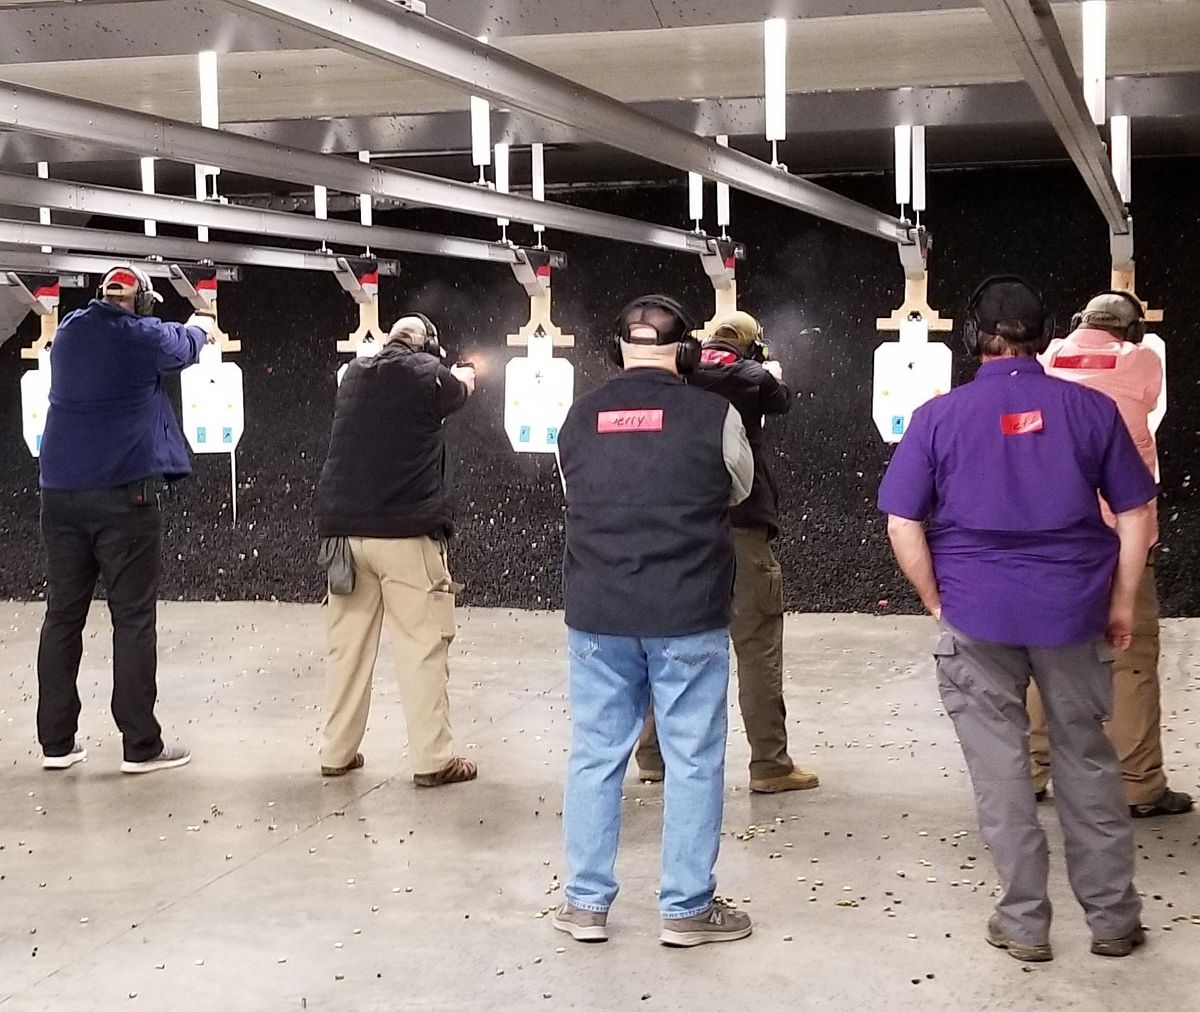 Rangemaster Firearms Instructor Development Course